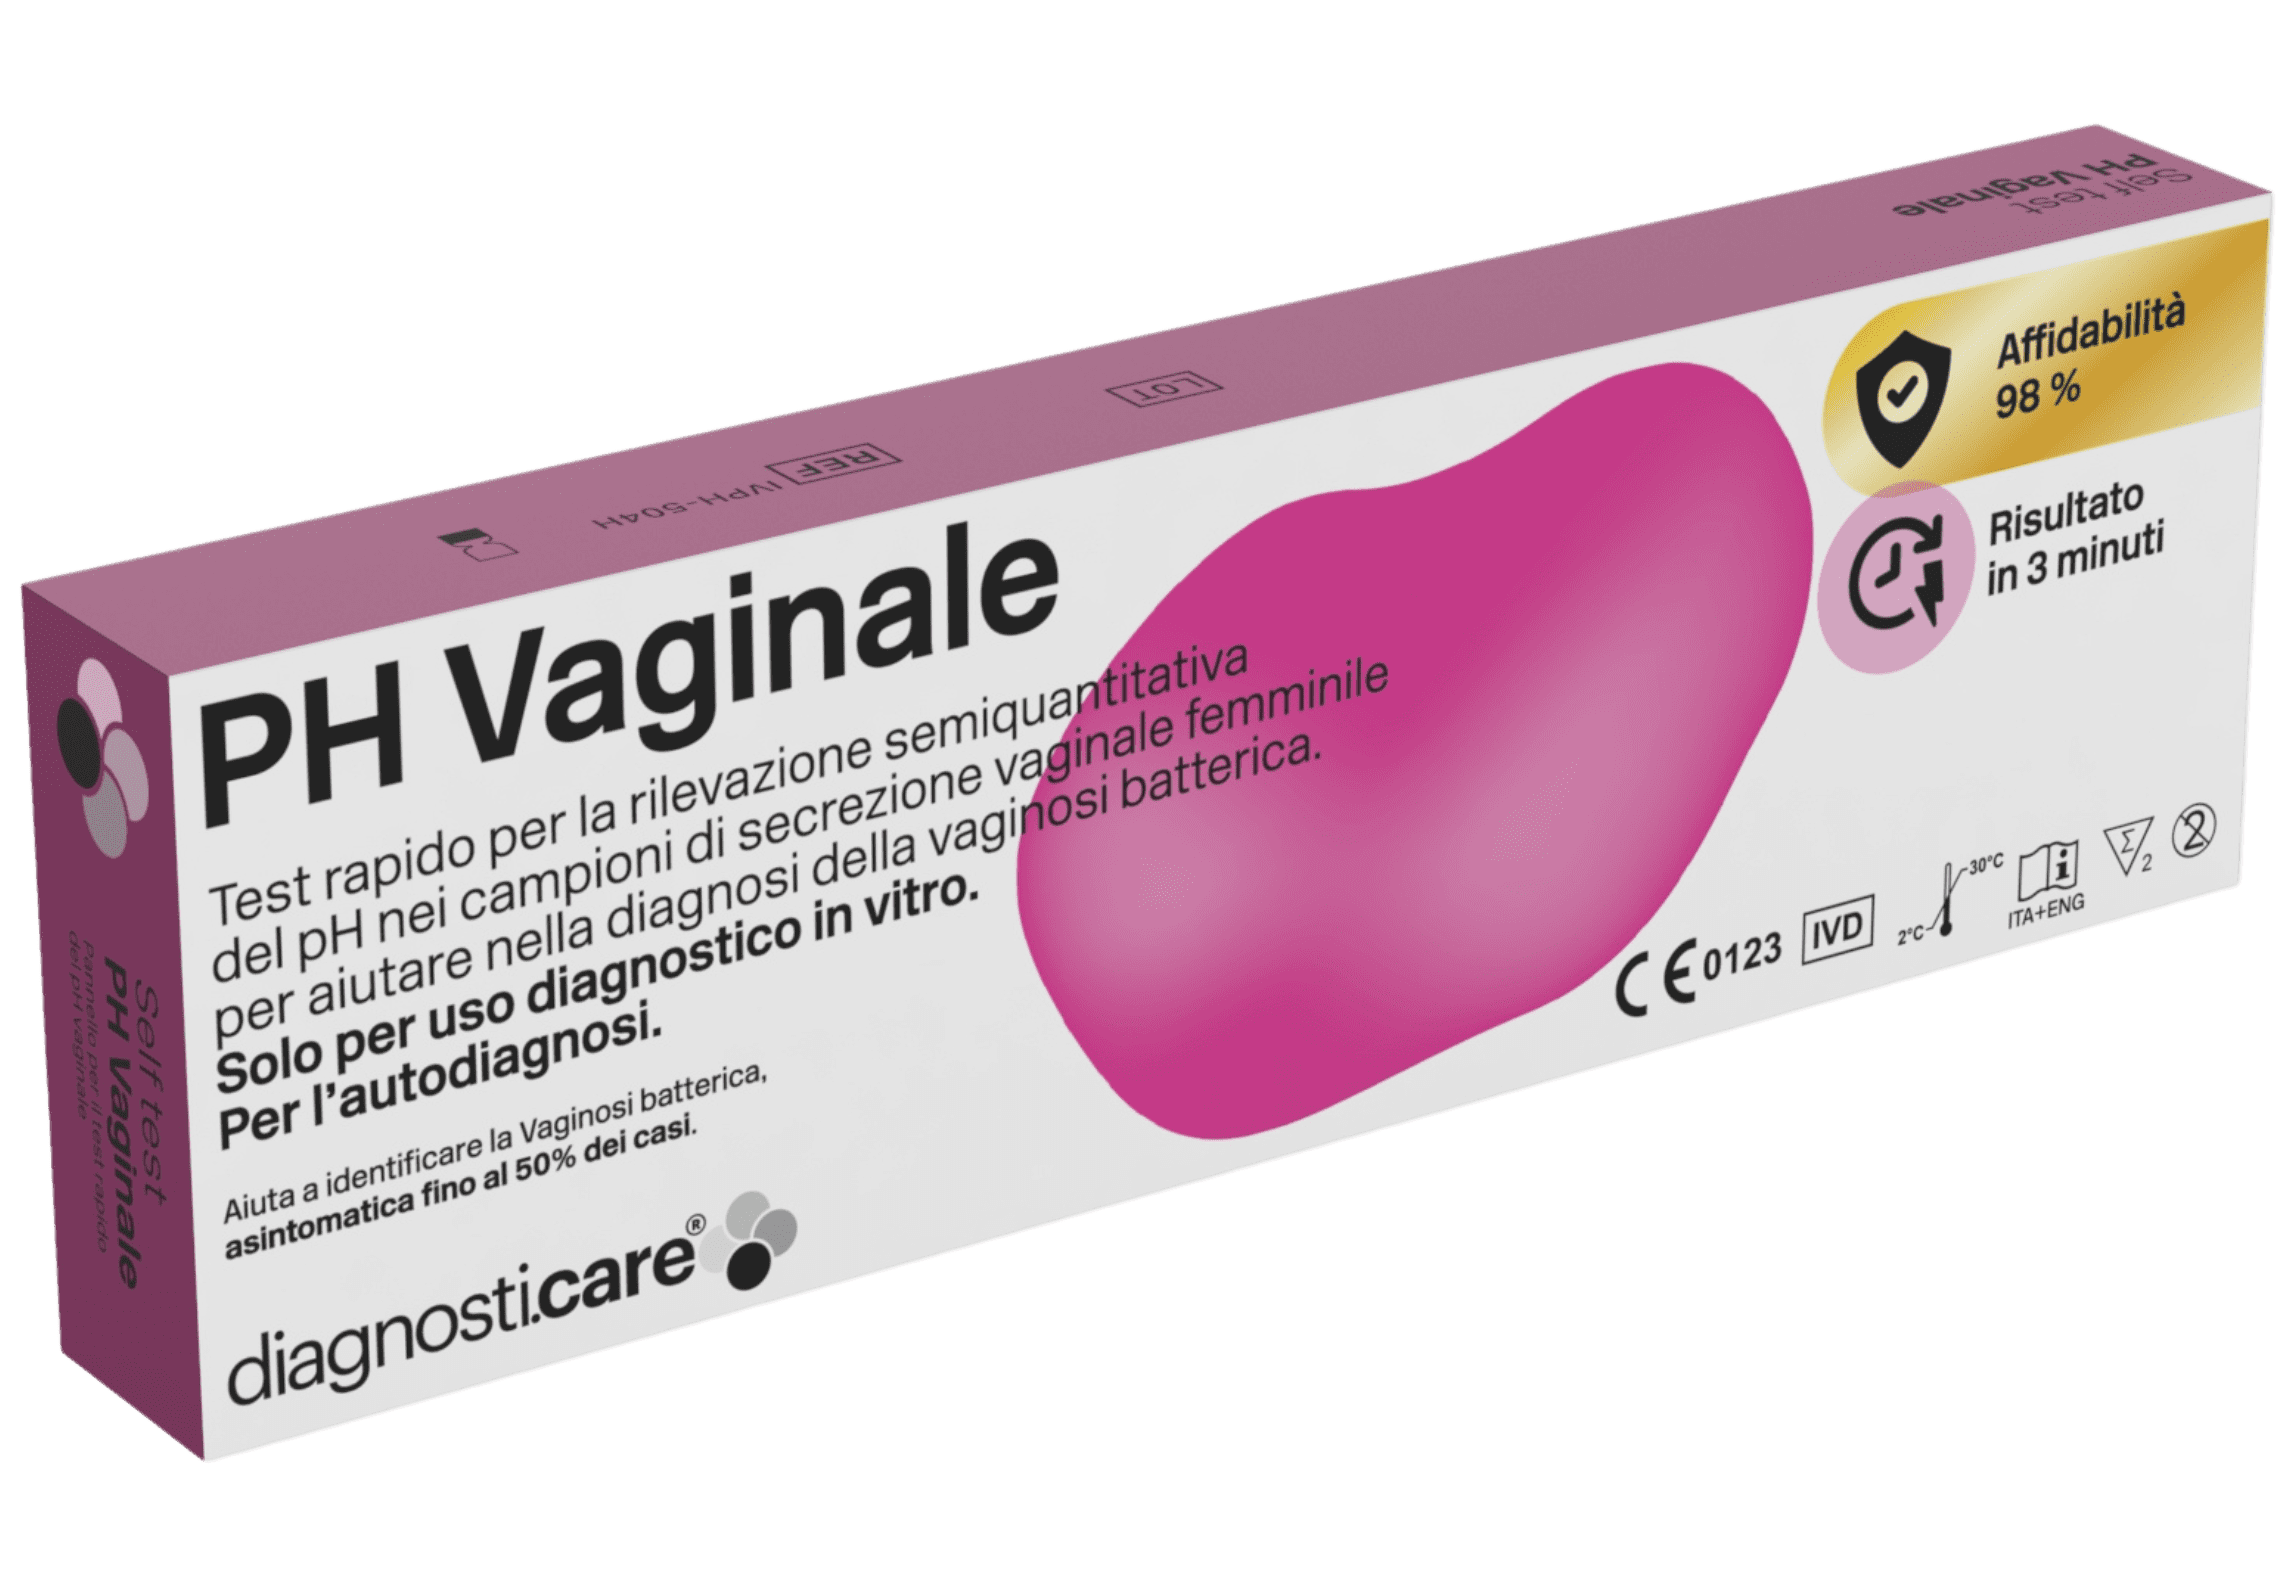 Self Test PH Vaginale Diagnosti.care